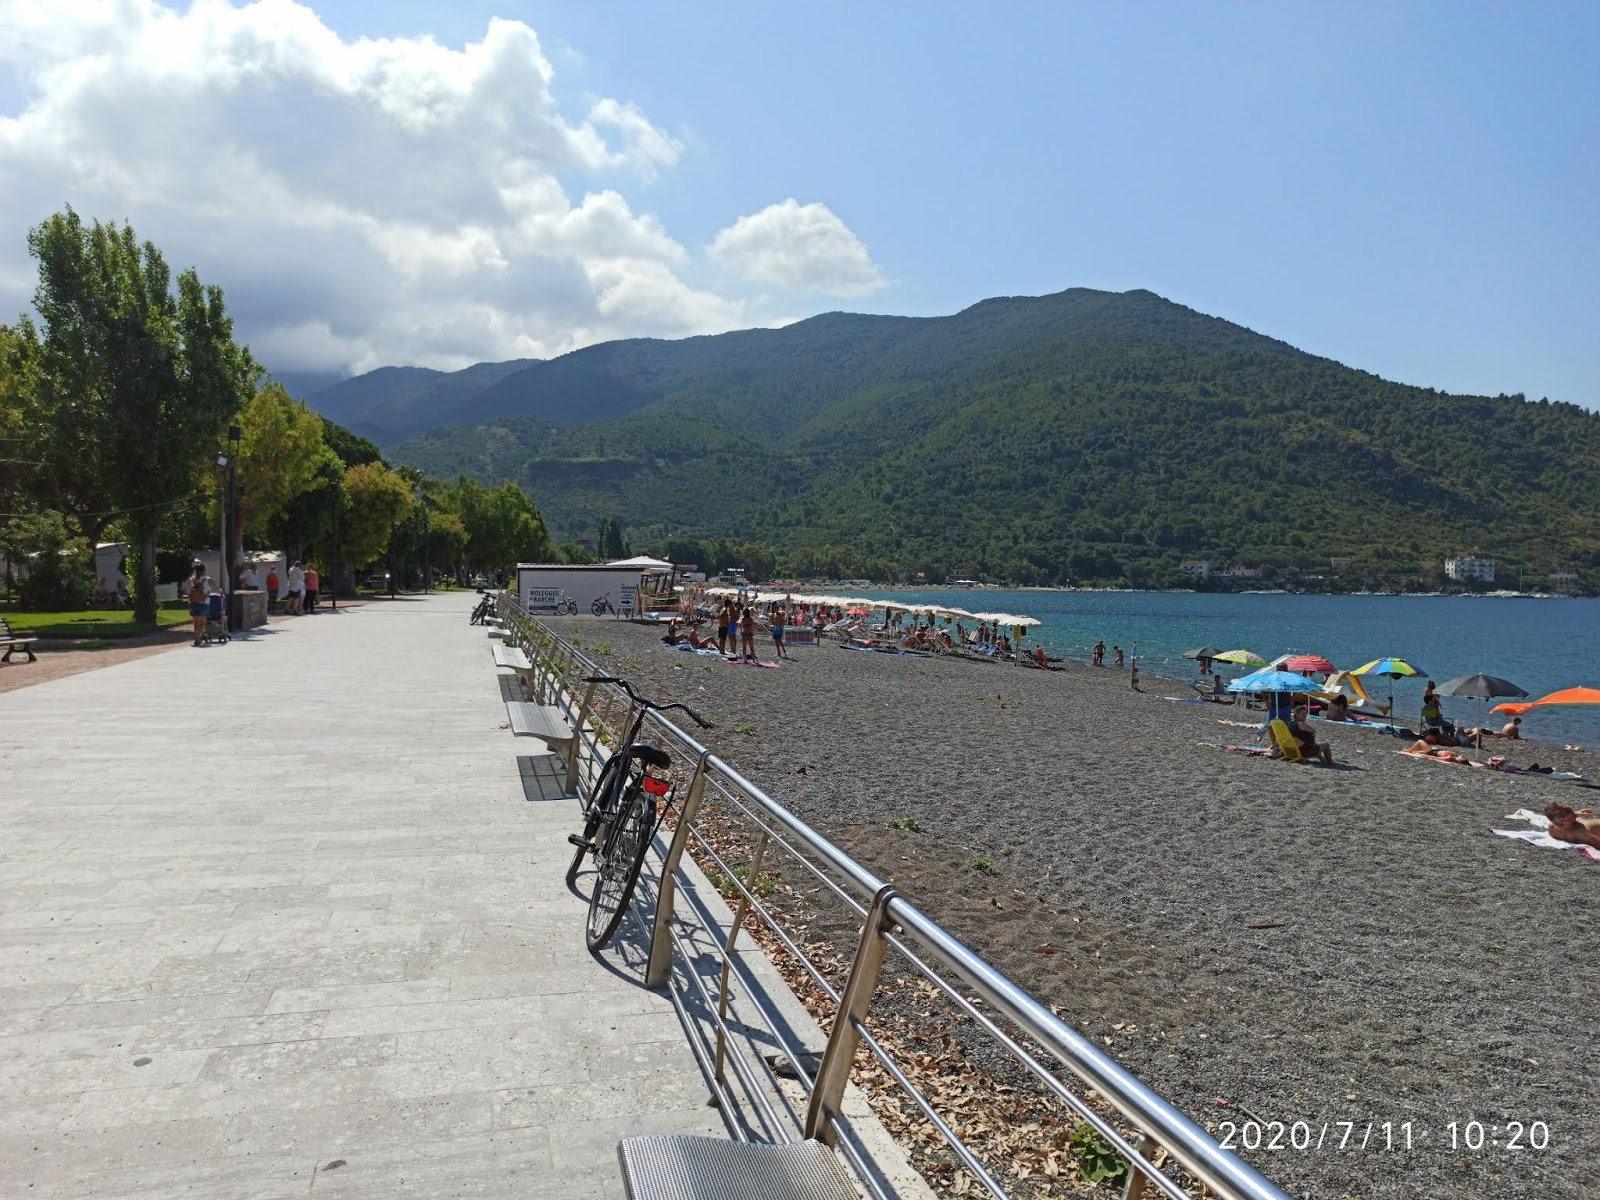 Zdjęcie Sapri beach - popularne miejsce wśród znawców relaksu